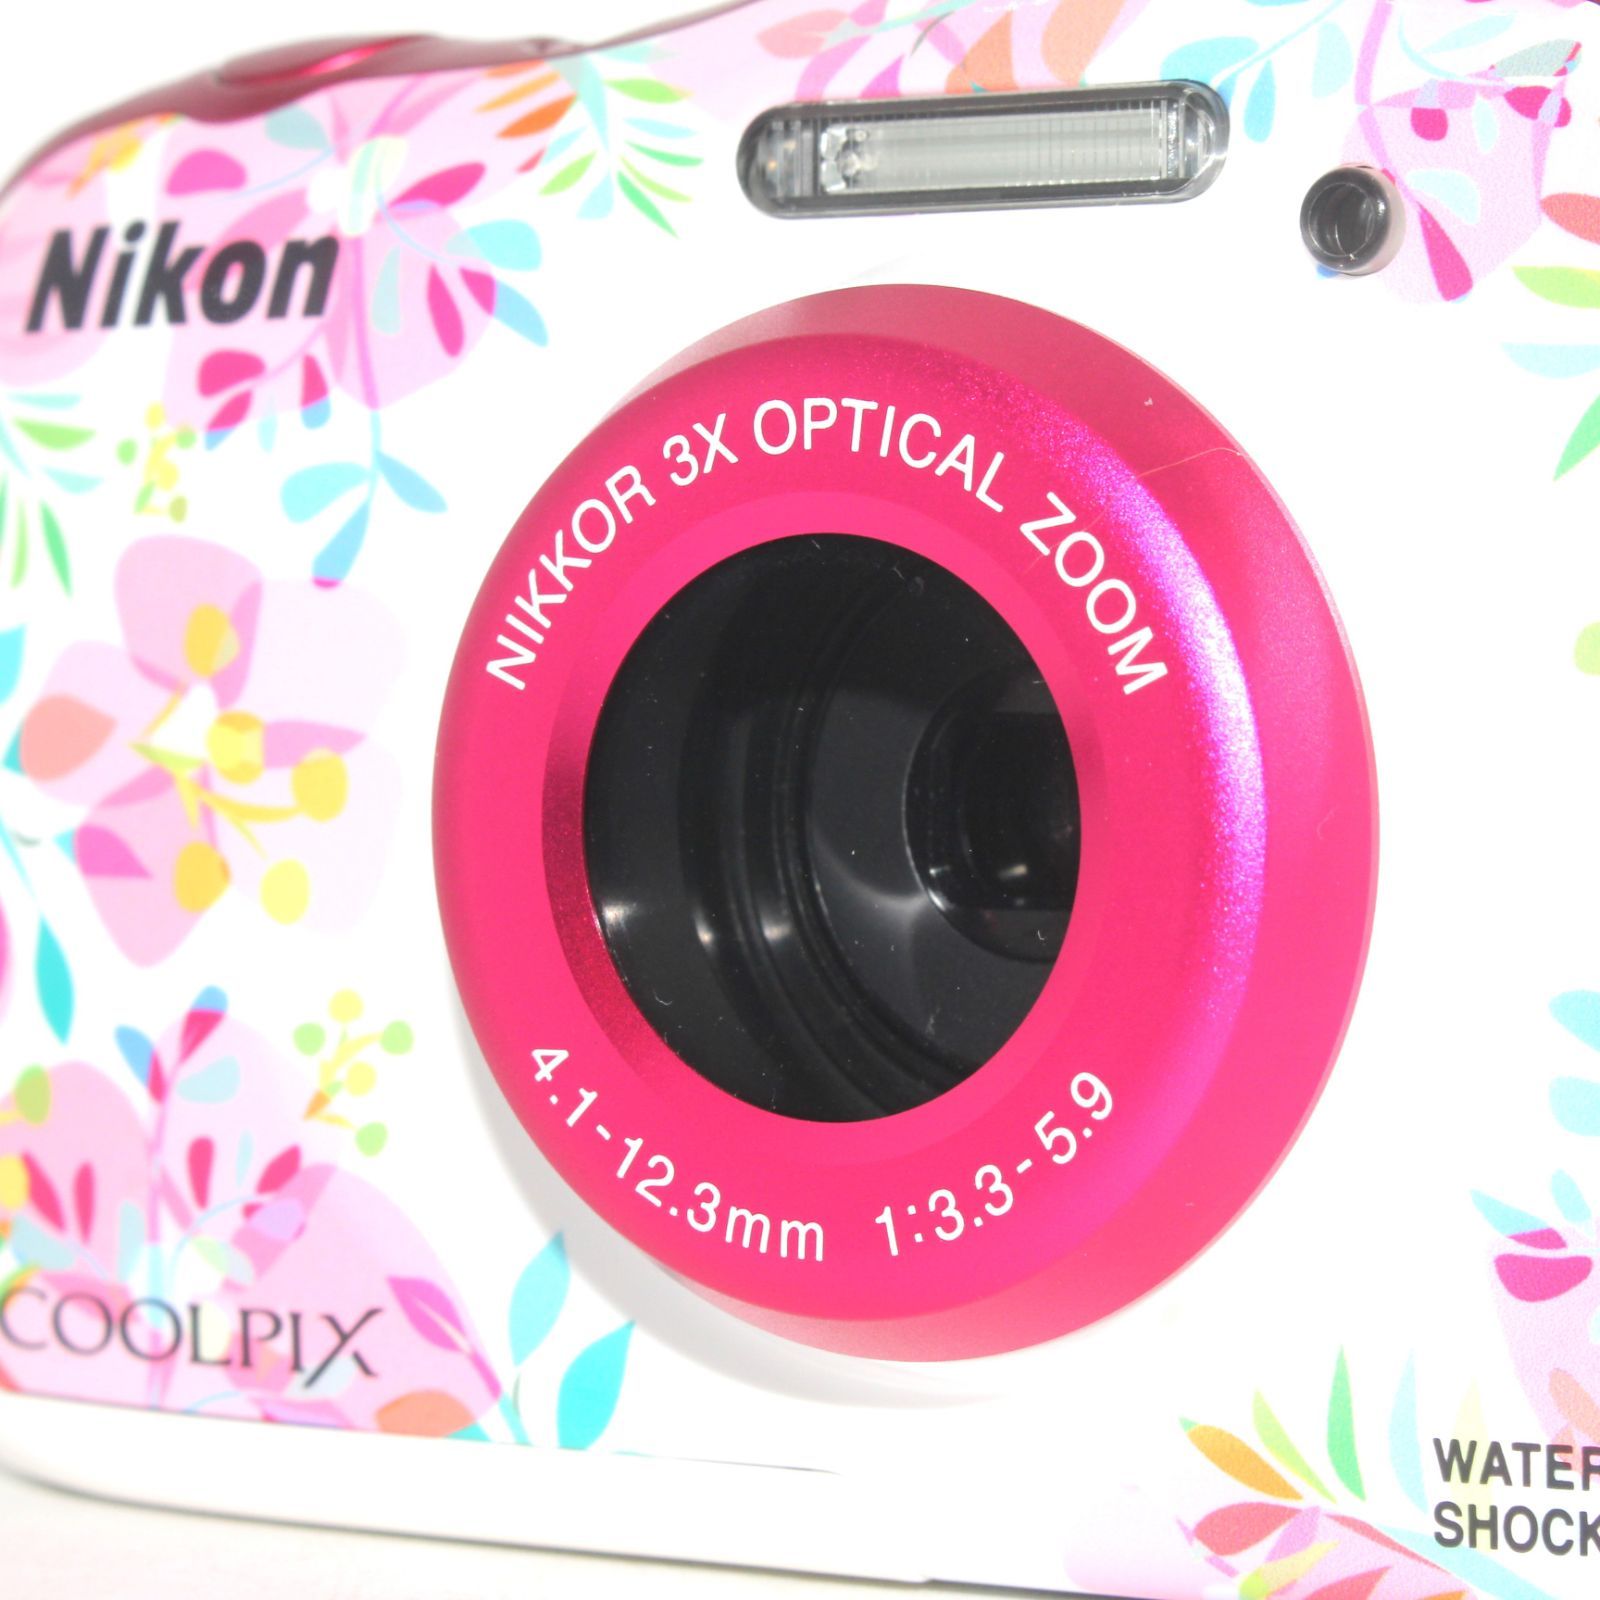 極上品 希少な限定カラー Nikon デジタルカメラ COOLPIX W150 防水 W150FL クールピクス フラワー ???? PitchCam  メルカリ店 ???? メルカリ